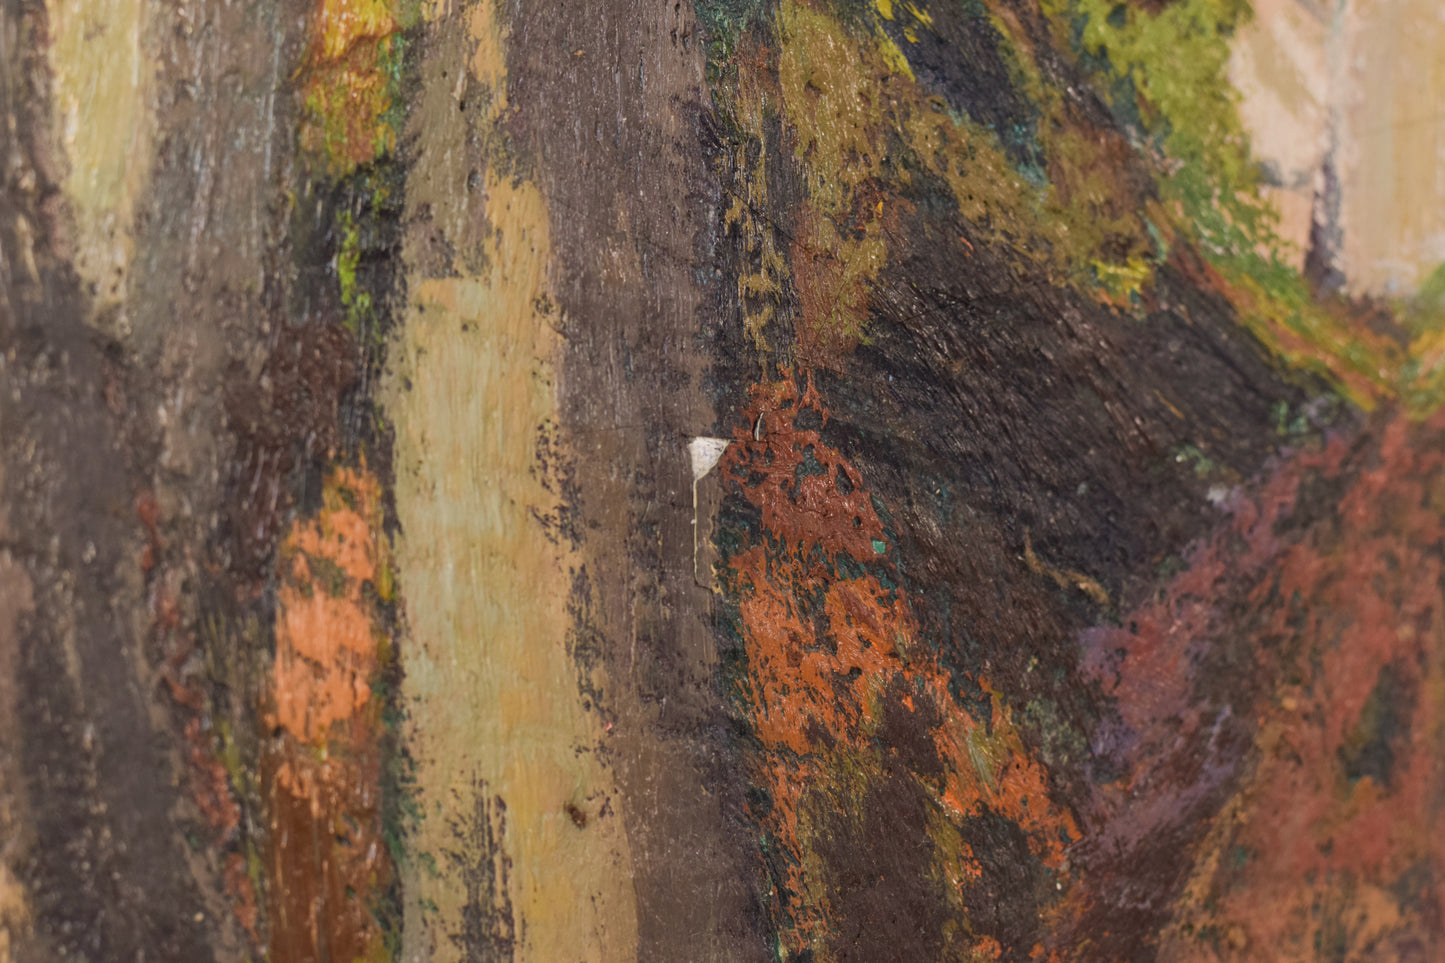 Enmarcado Postimpresionista firmado Óleo sobre lienzo de árboles y cascada